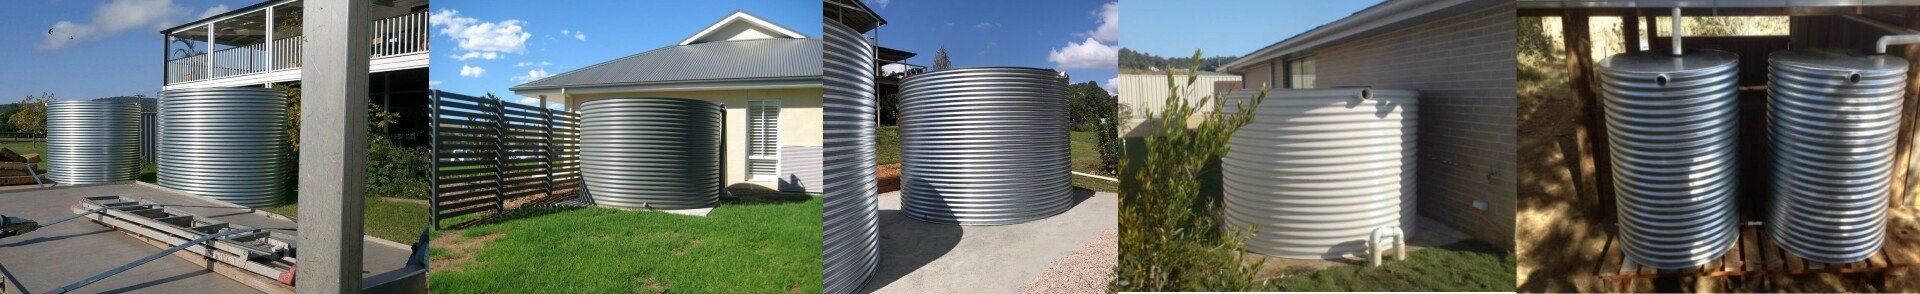 Round Steel Water Tanks Brisbane QLD